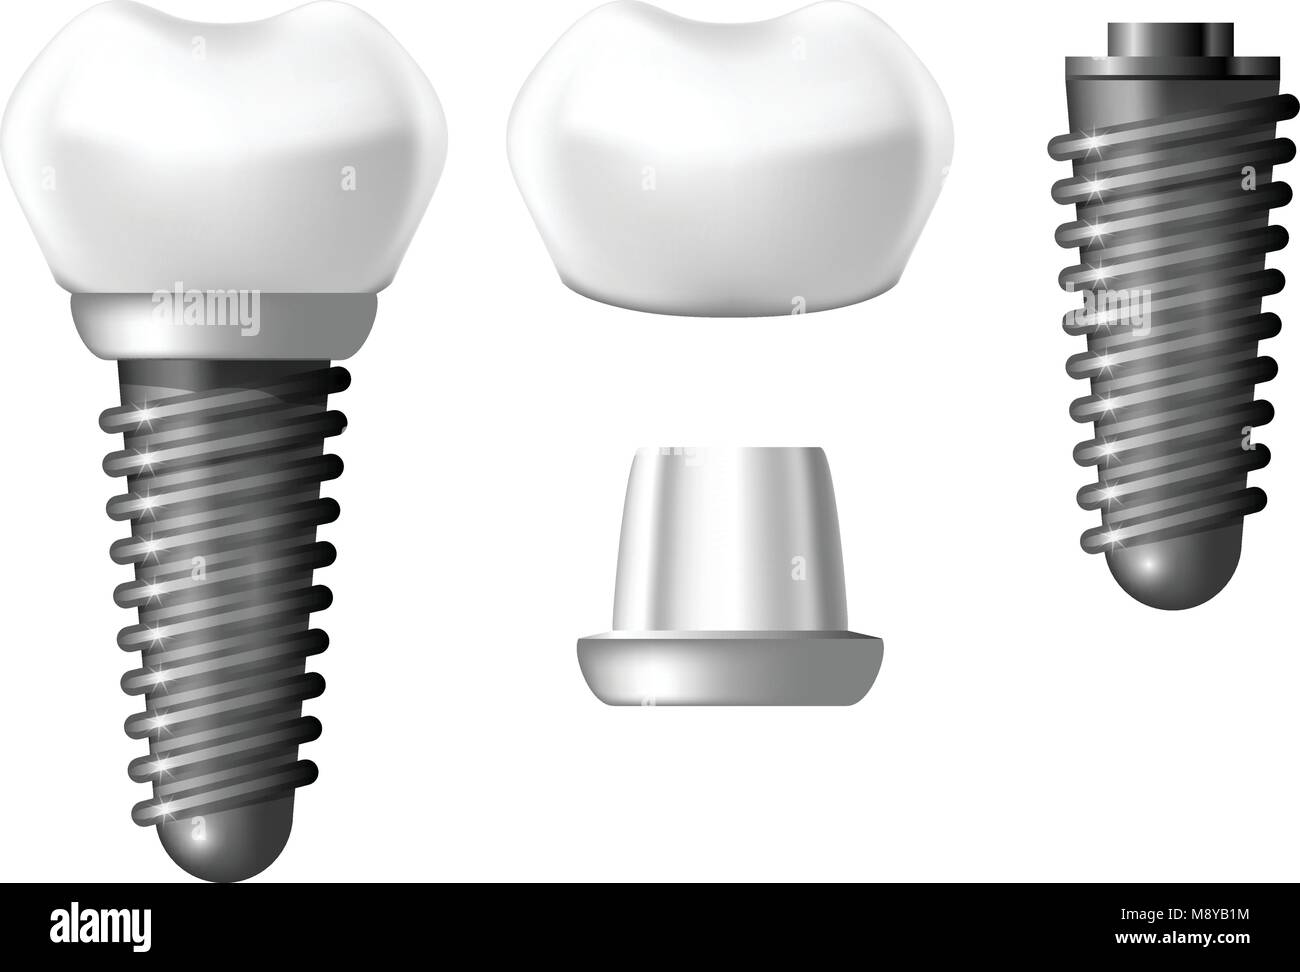 Componenti di impianto dentale - Denti di dentiera Illustrazione Vettoriale